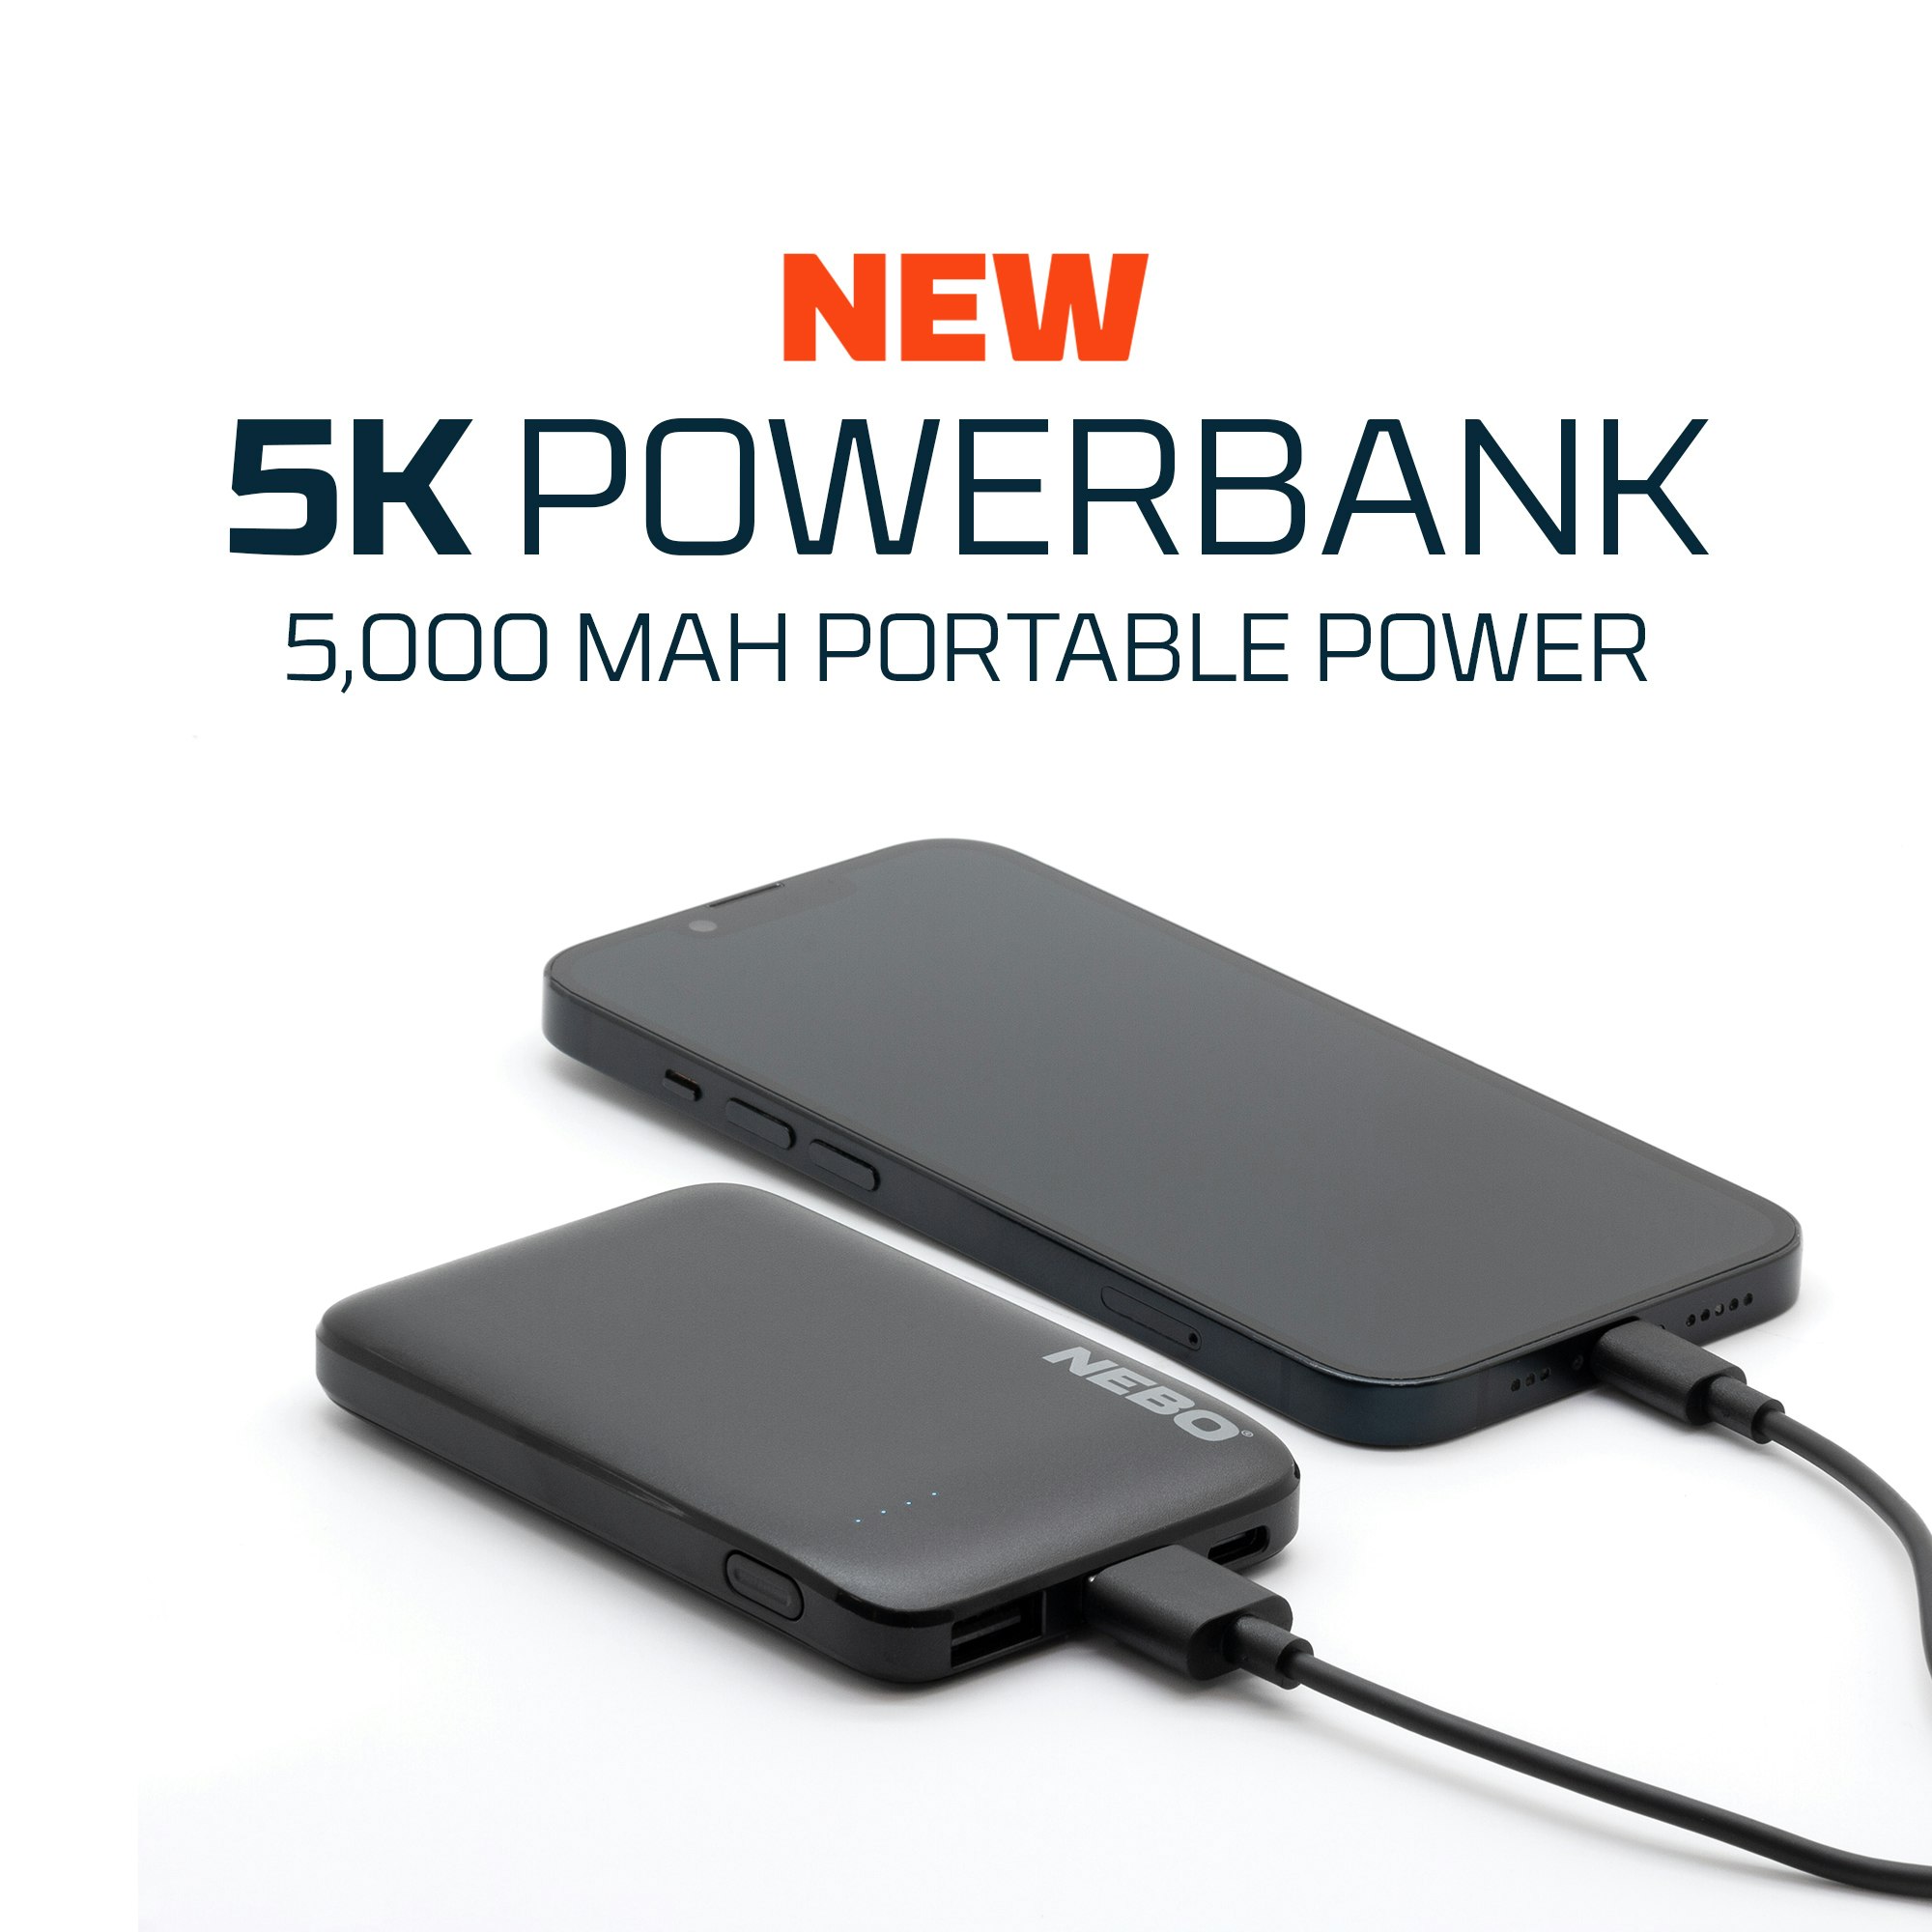 NEBO Powerbank 5K, 5000 mAh